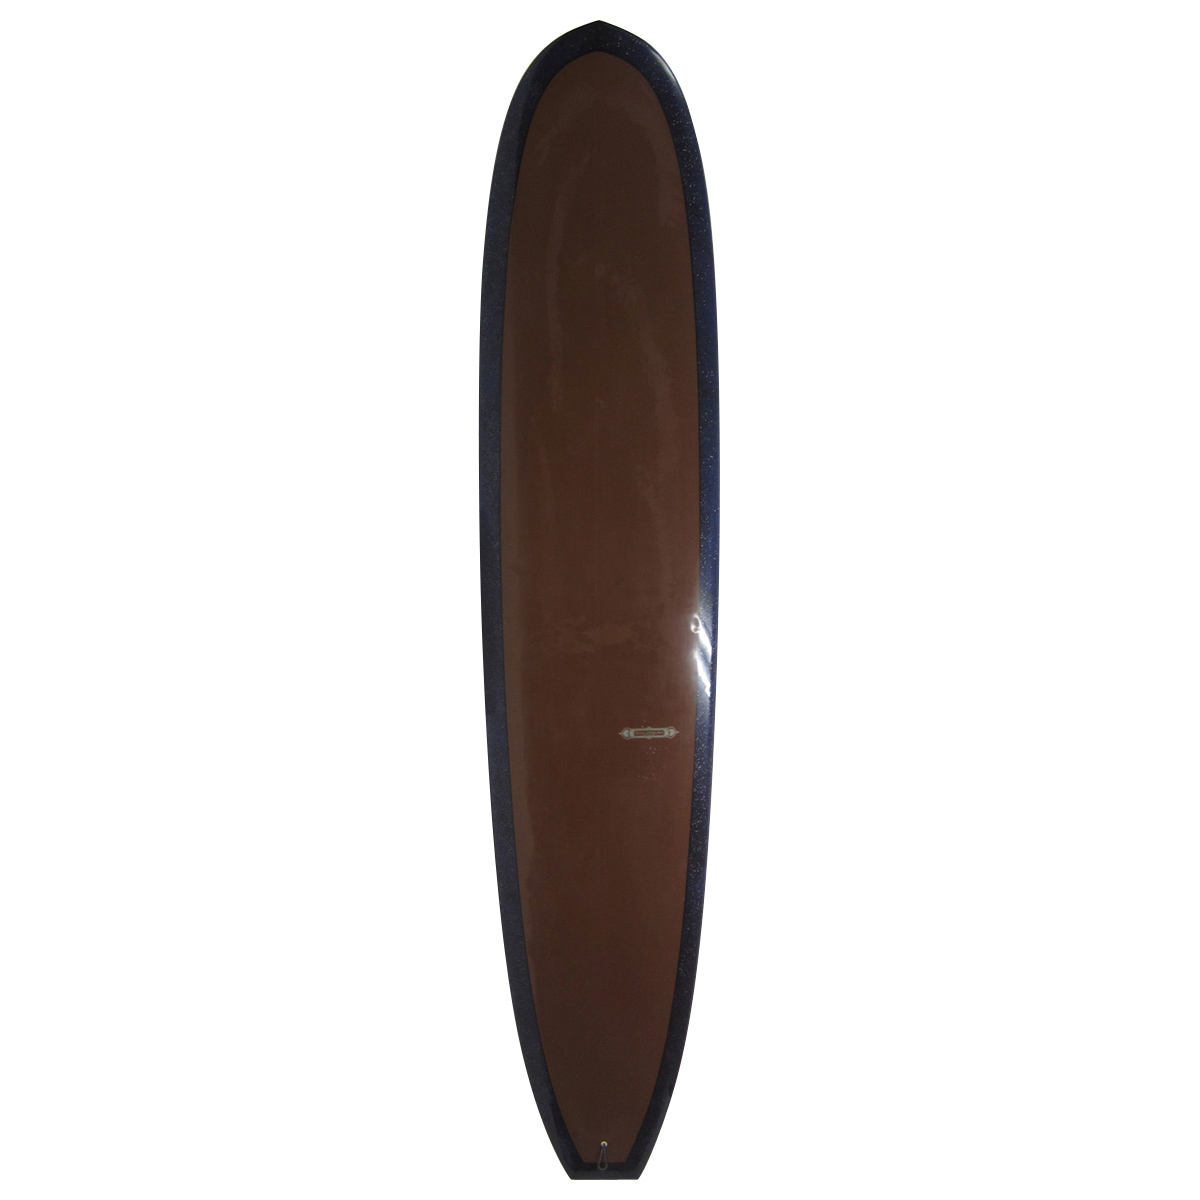  / MAHAL SURFBOARDS / Noserider Custom 9'2